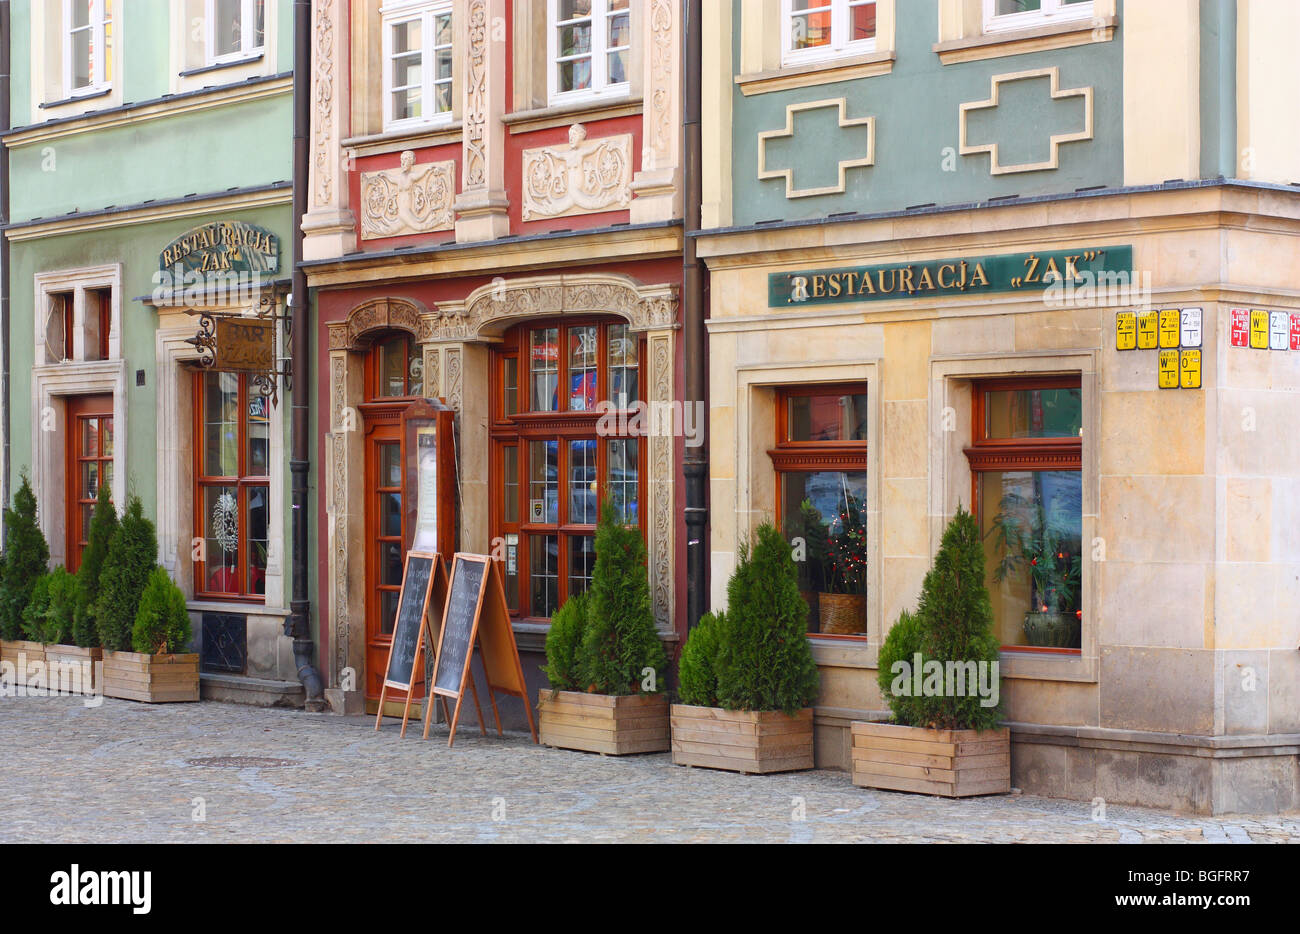 Breslau alte Markt bunten Fassaden der historischen Bürgerhäuser Stockfoto